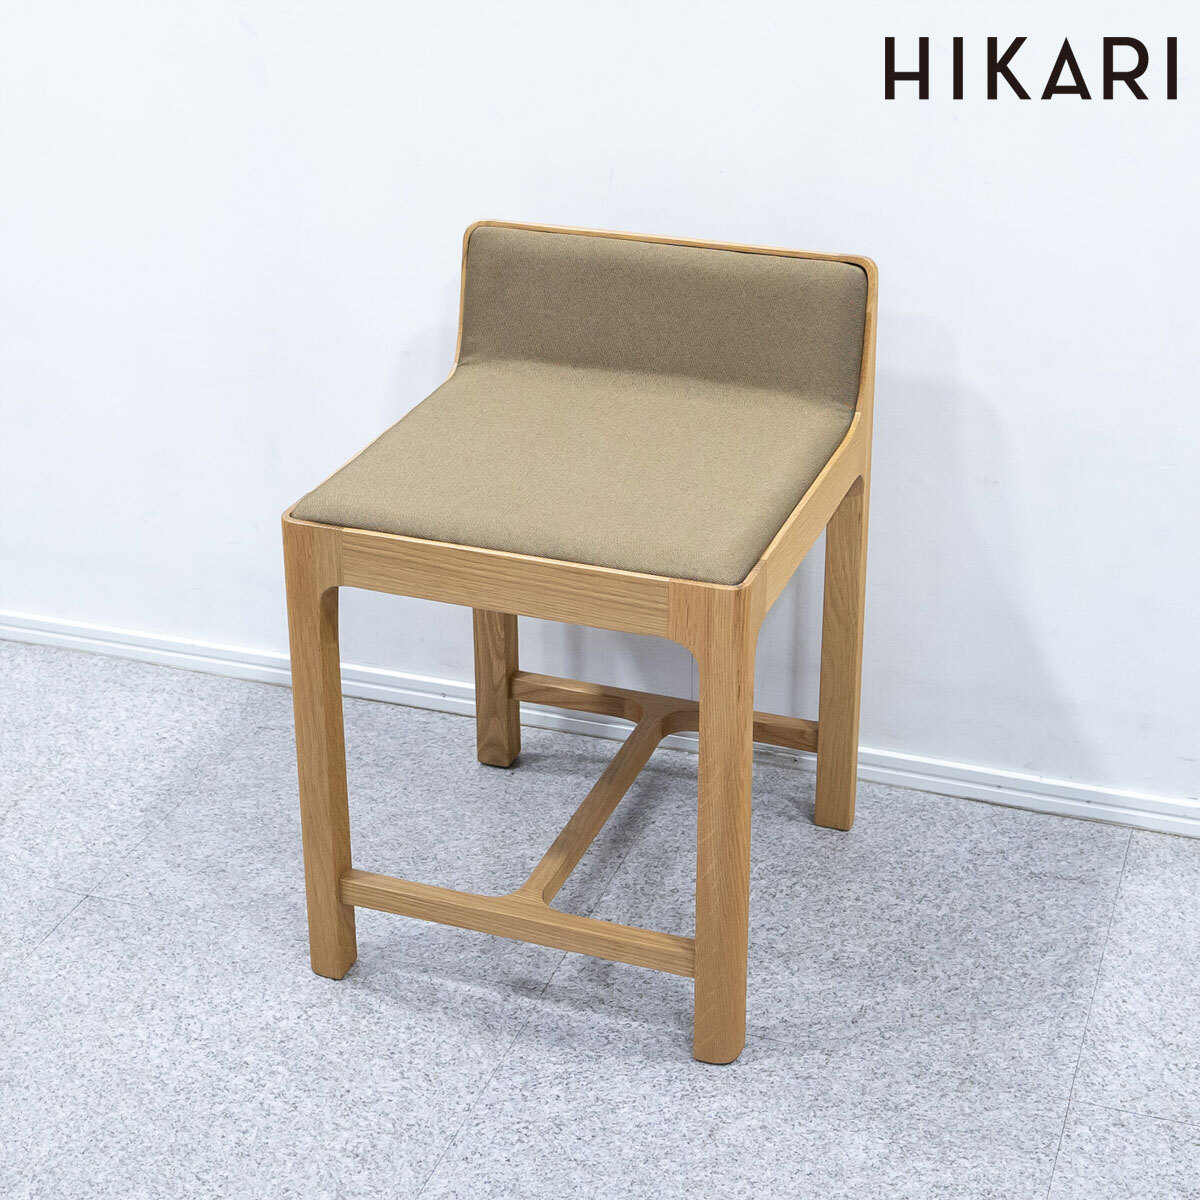 【新品】HIKARI ヒカリ Morceau KC モルソー チェア スツール ファブリック カーキ 定価4万_画像1